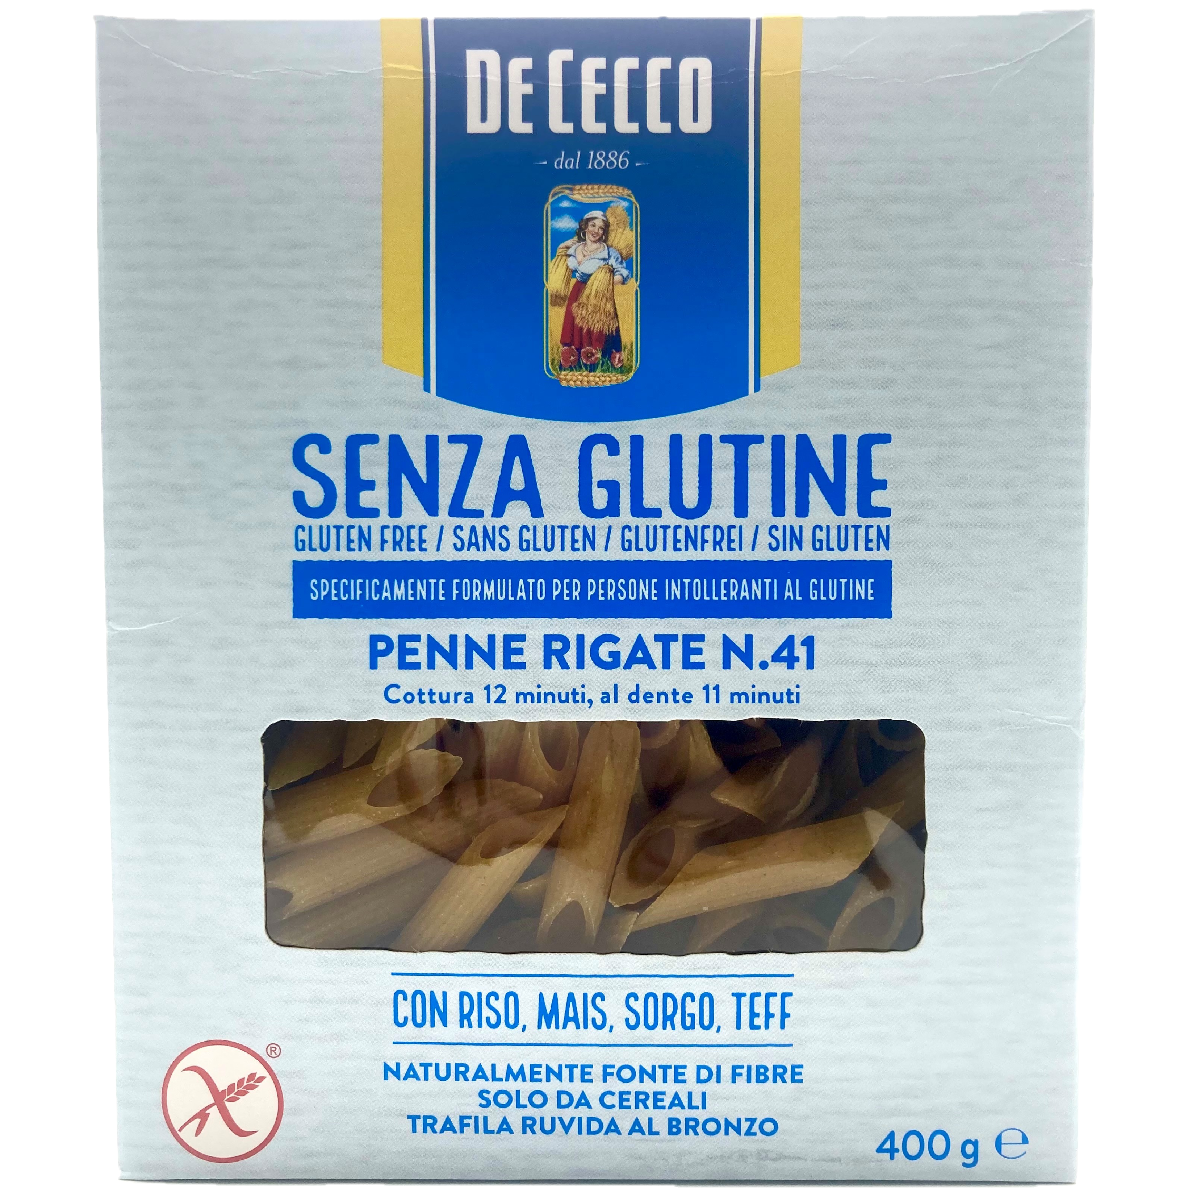 De Cecco Penne Rigate No 41 Gluten Free 400g